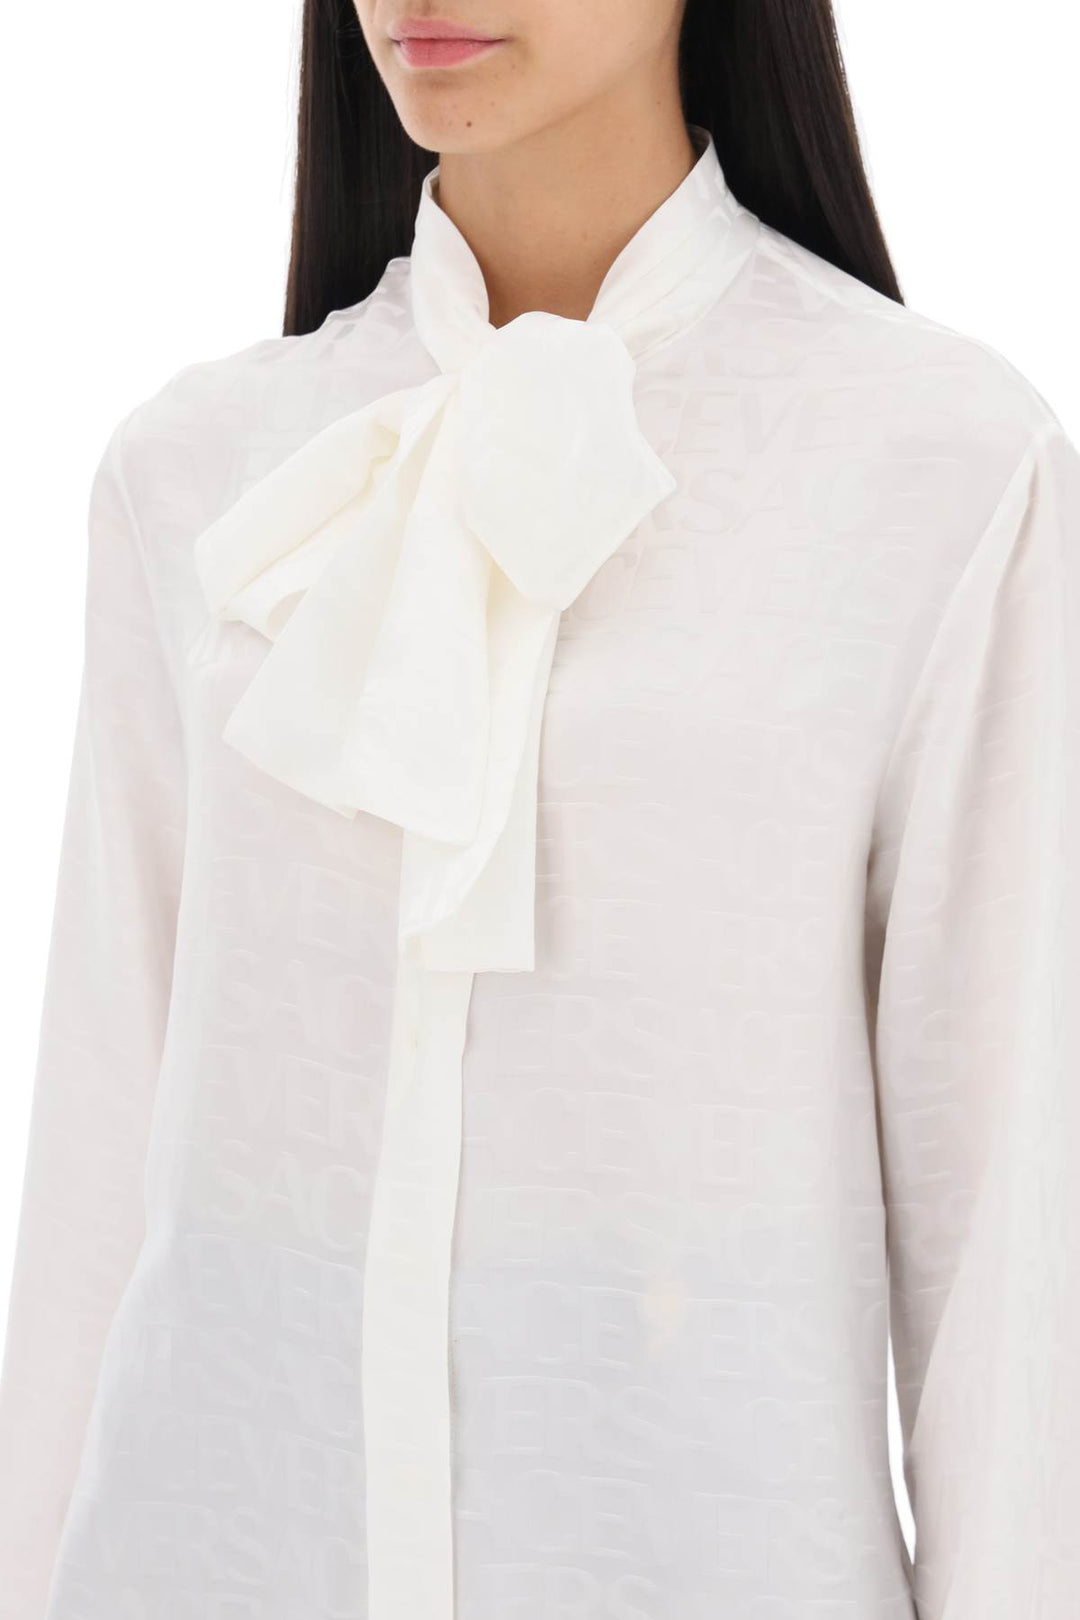 Versace 'Allover' Lavallière Shirt   Bianco